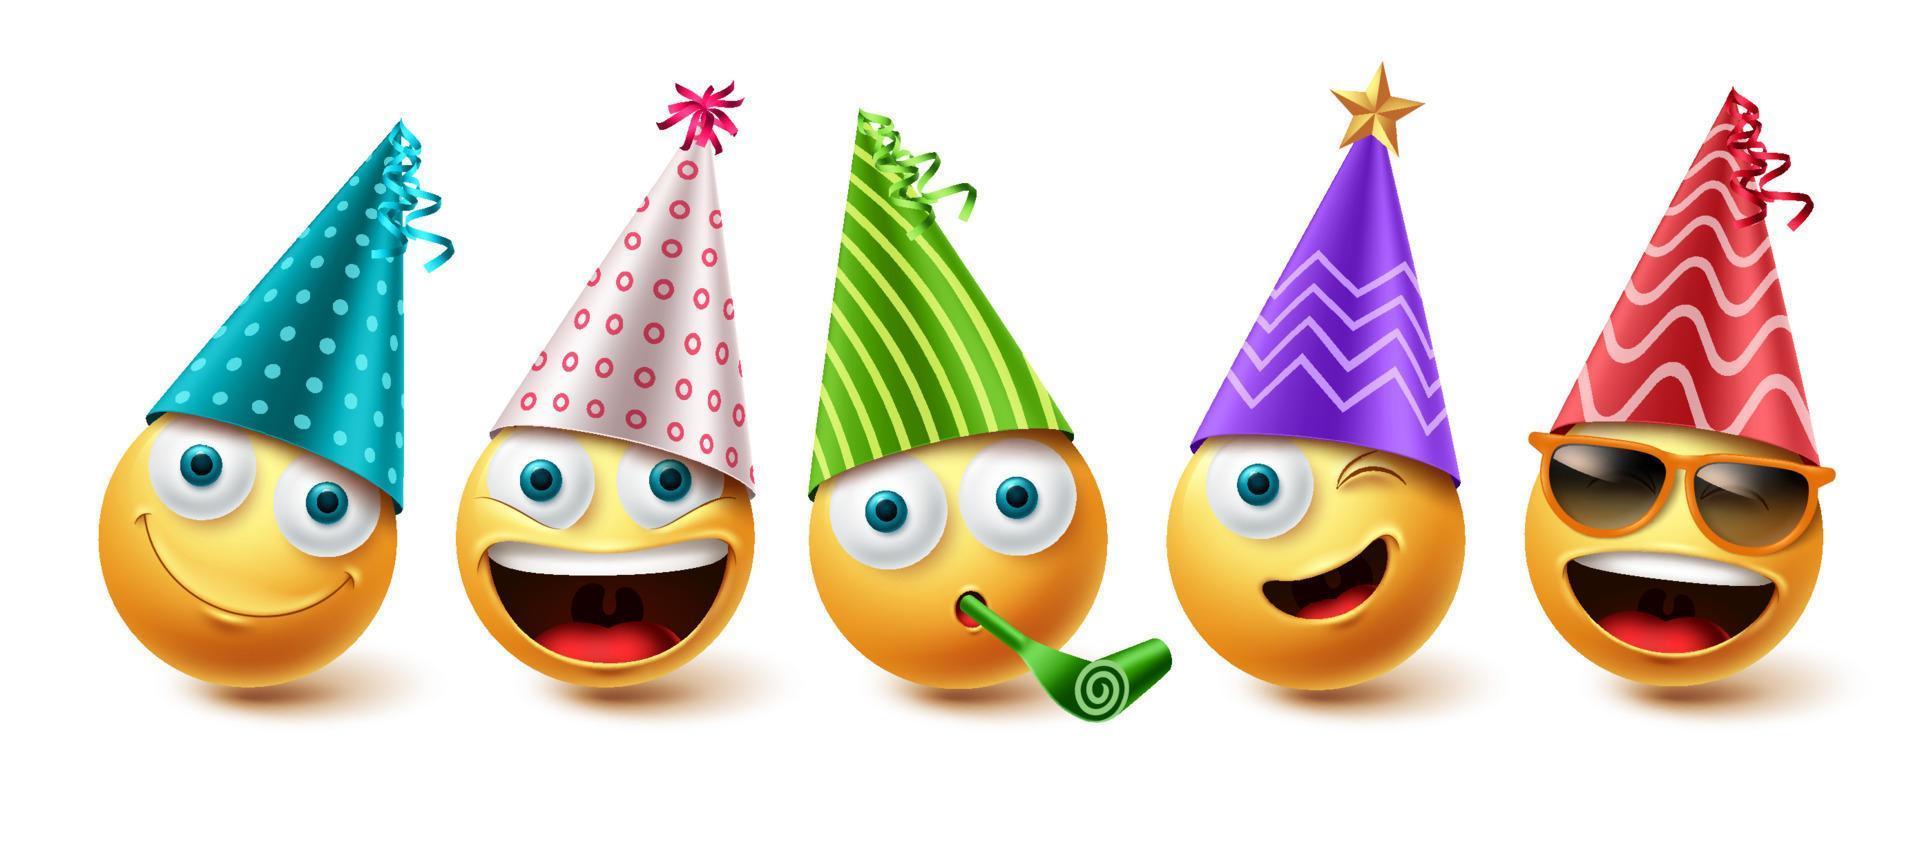 födelsedag emoji vektor set. emoticon födelsedagsfest ikonsamling isolerad i vit bakgrund för grafiska designelement. vektor illustration